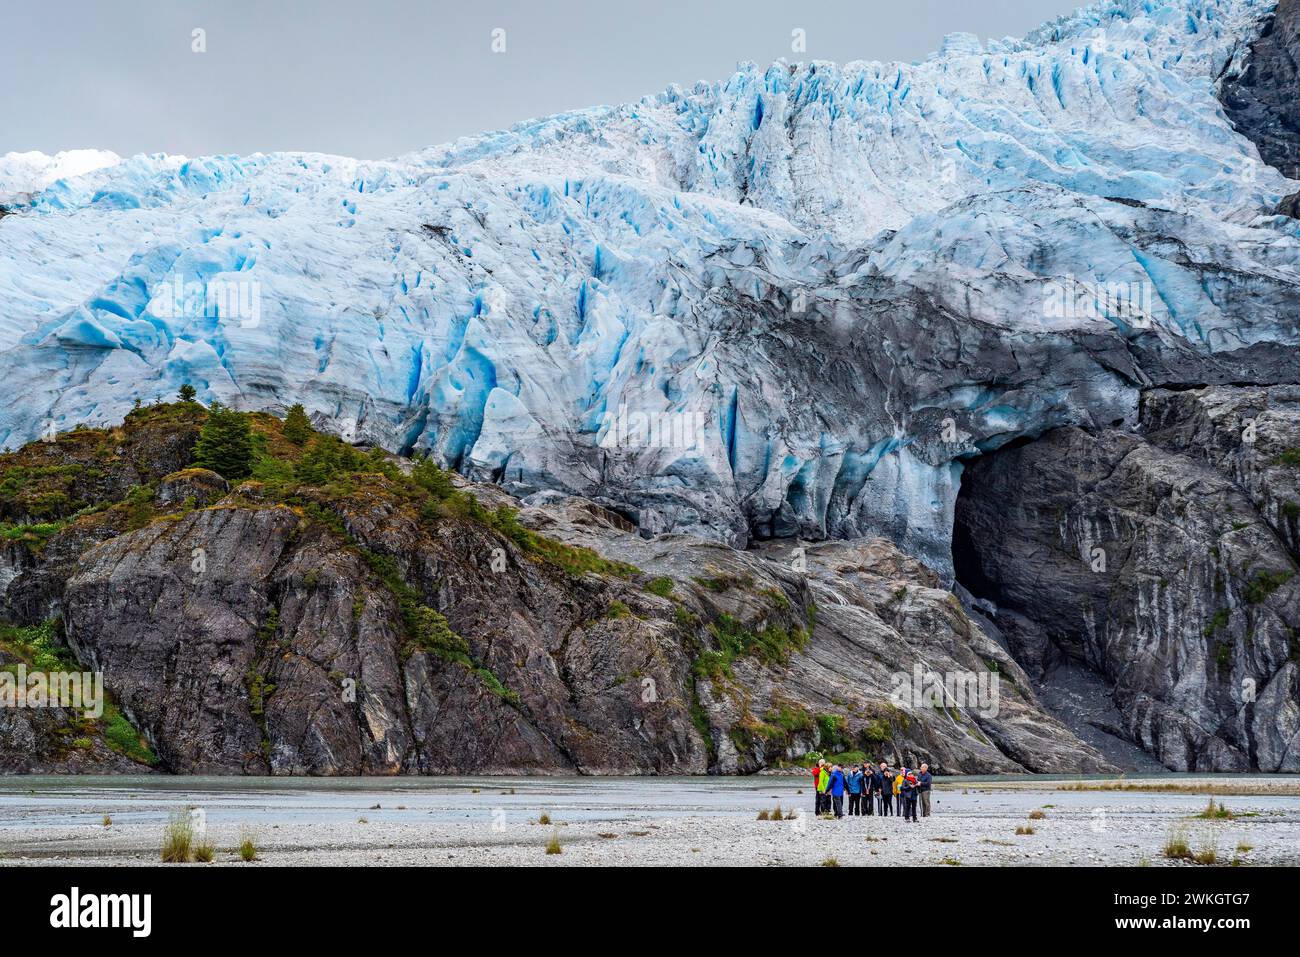 Les passagers du bateau de croisière Stella Australis se tiennent au pied du glacier Aguila, parc national Alberto de Agostini, avenue des glaciers Banque D'Images